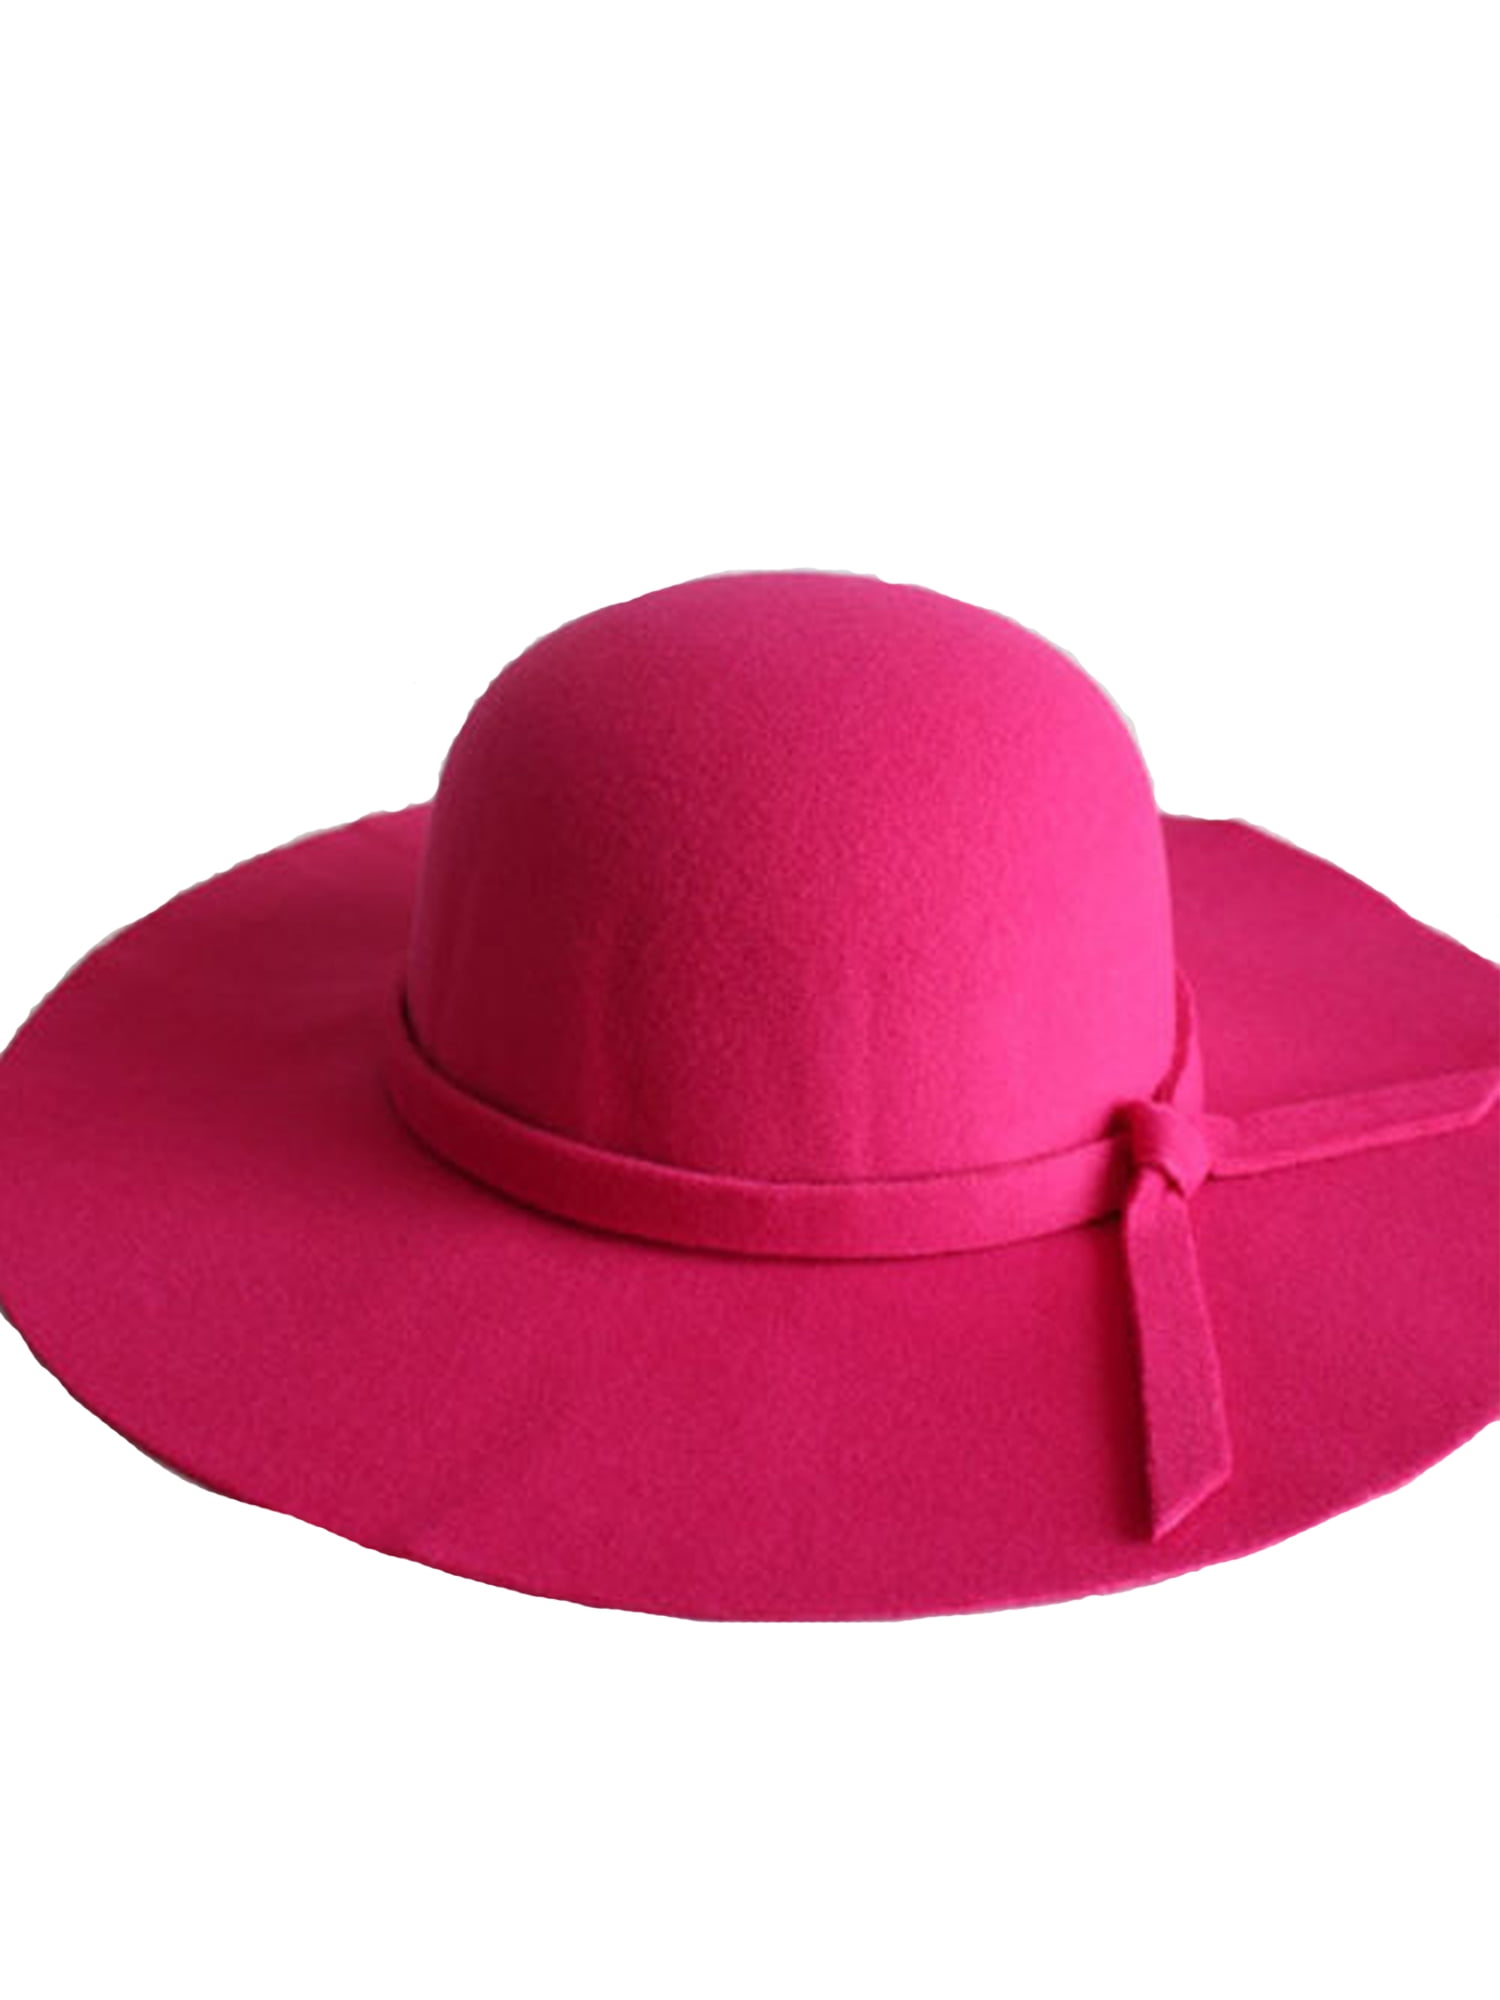 Women Vintage Wide Brim Floppy Warm Felt Hat Trilby Bowler 6 Colors Fishing  Hat 